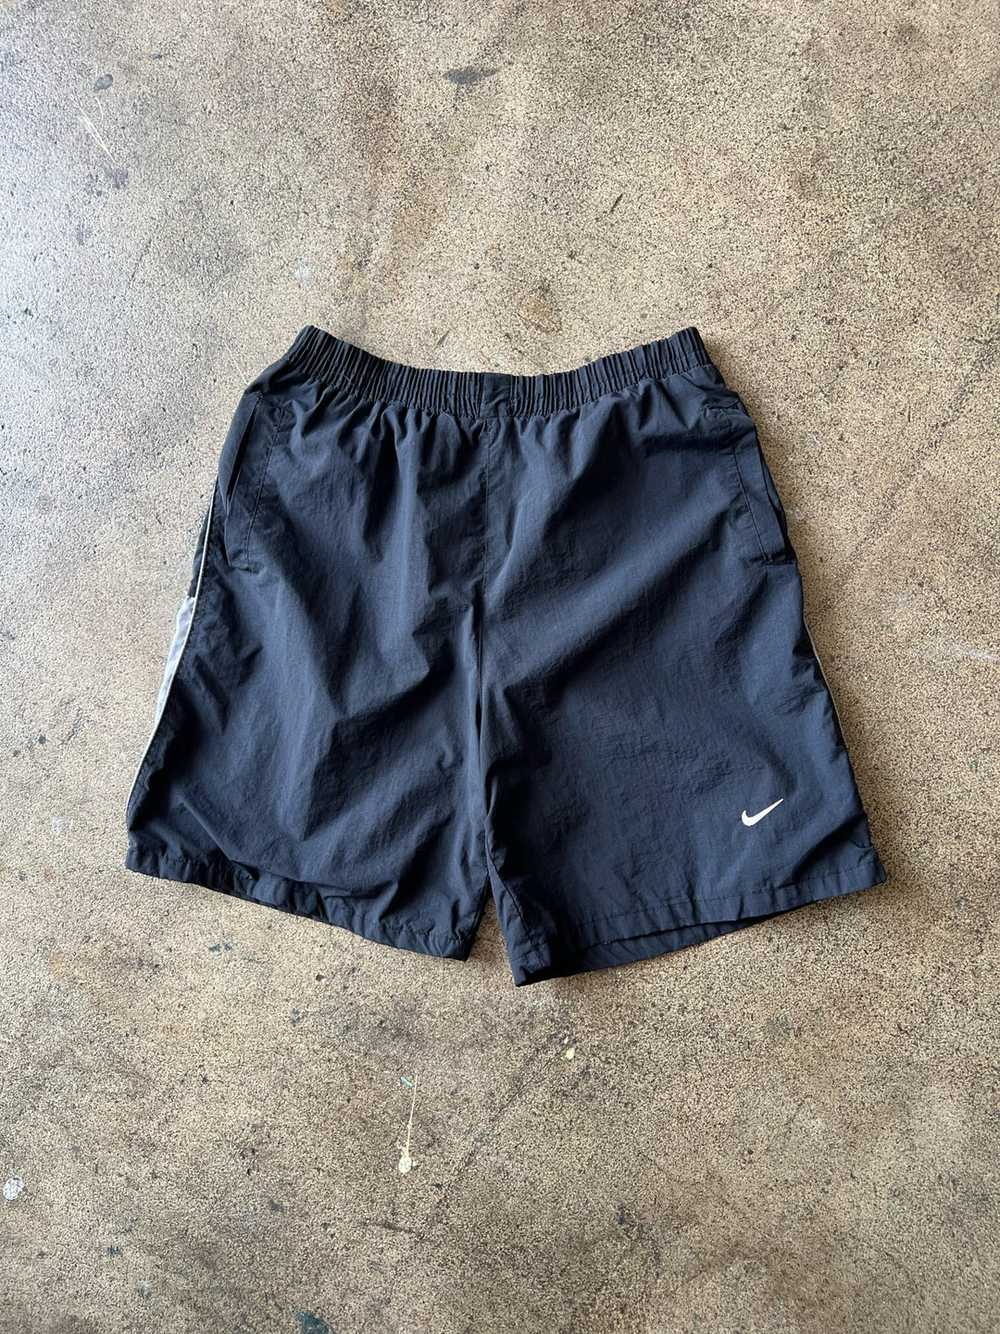 1990s Nike Athletic Shorts 7" Inseam - image 2